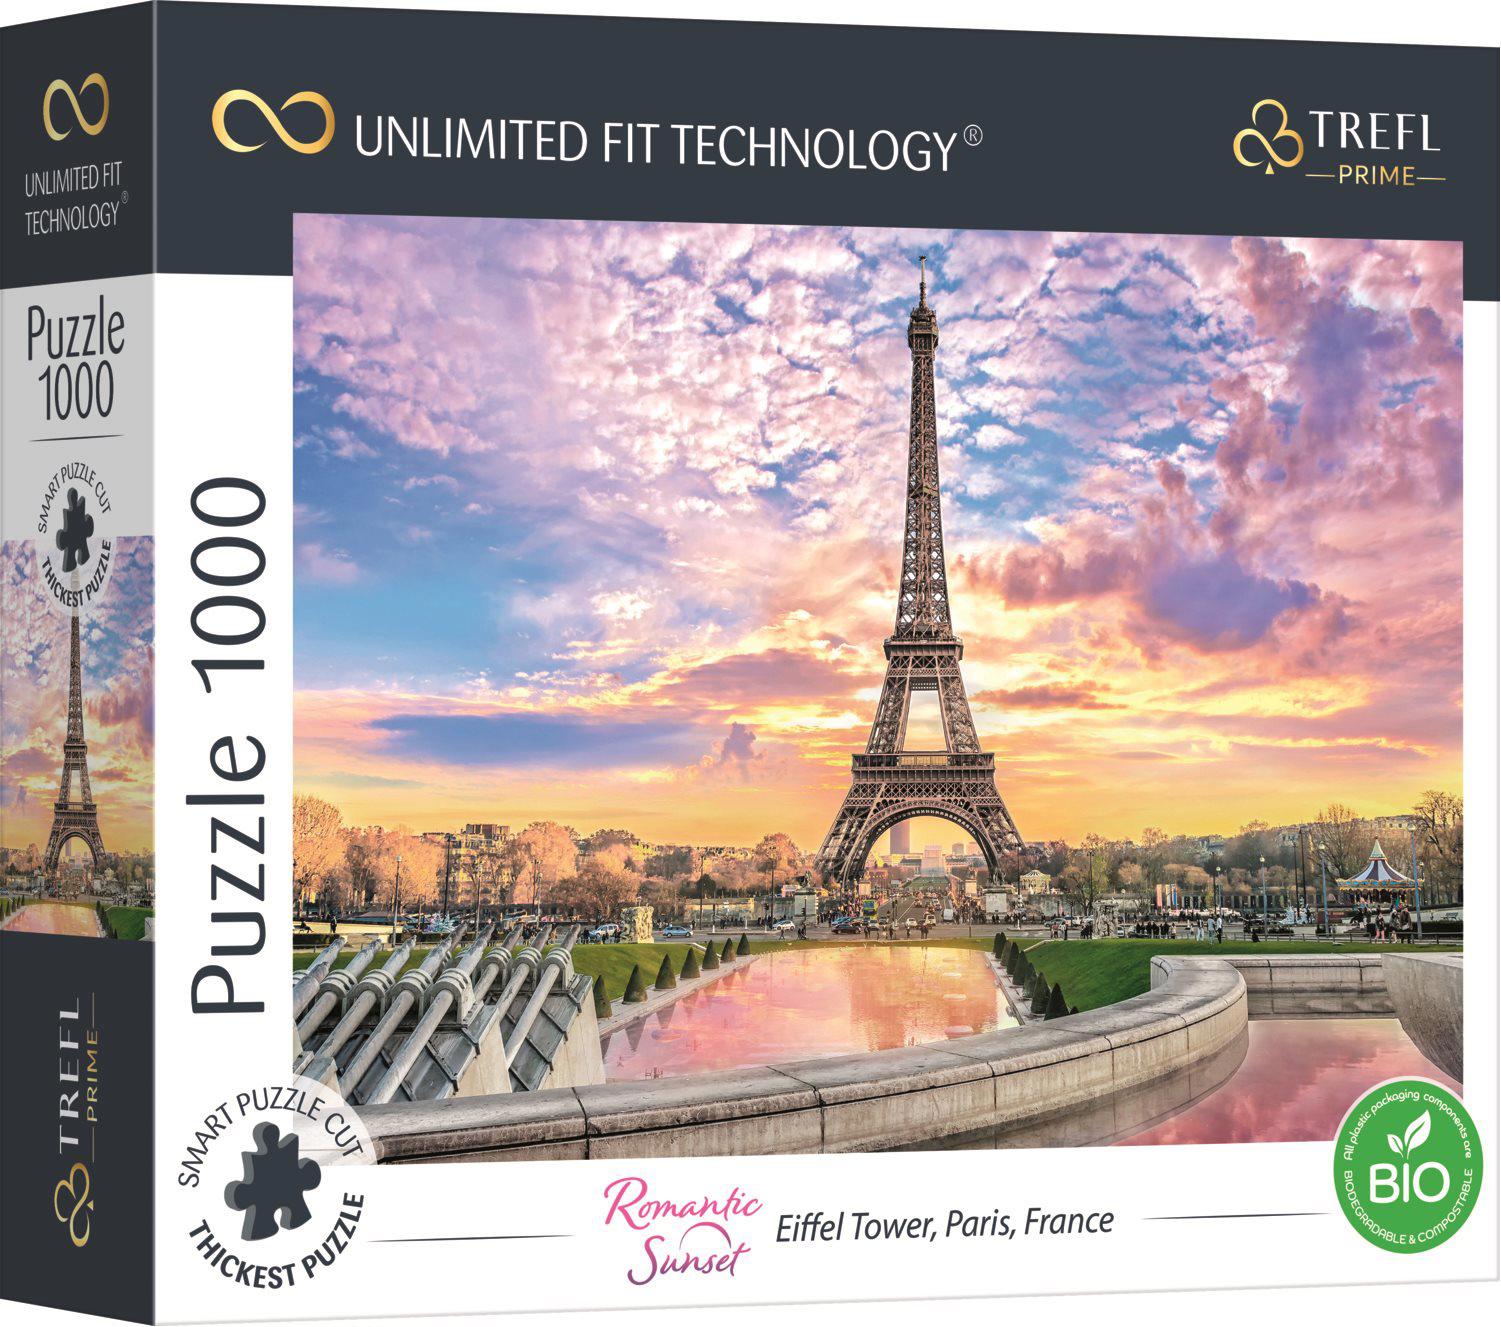 Puzzle Tour Eiffel, Paris, France UFT